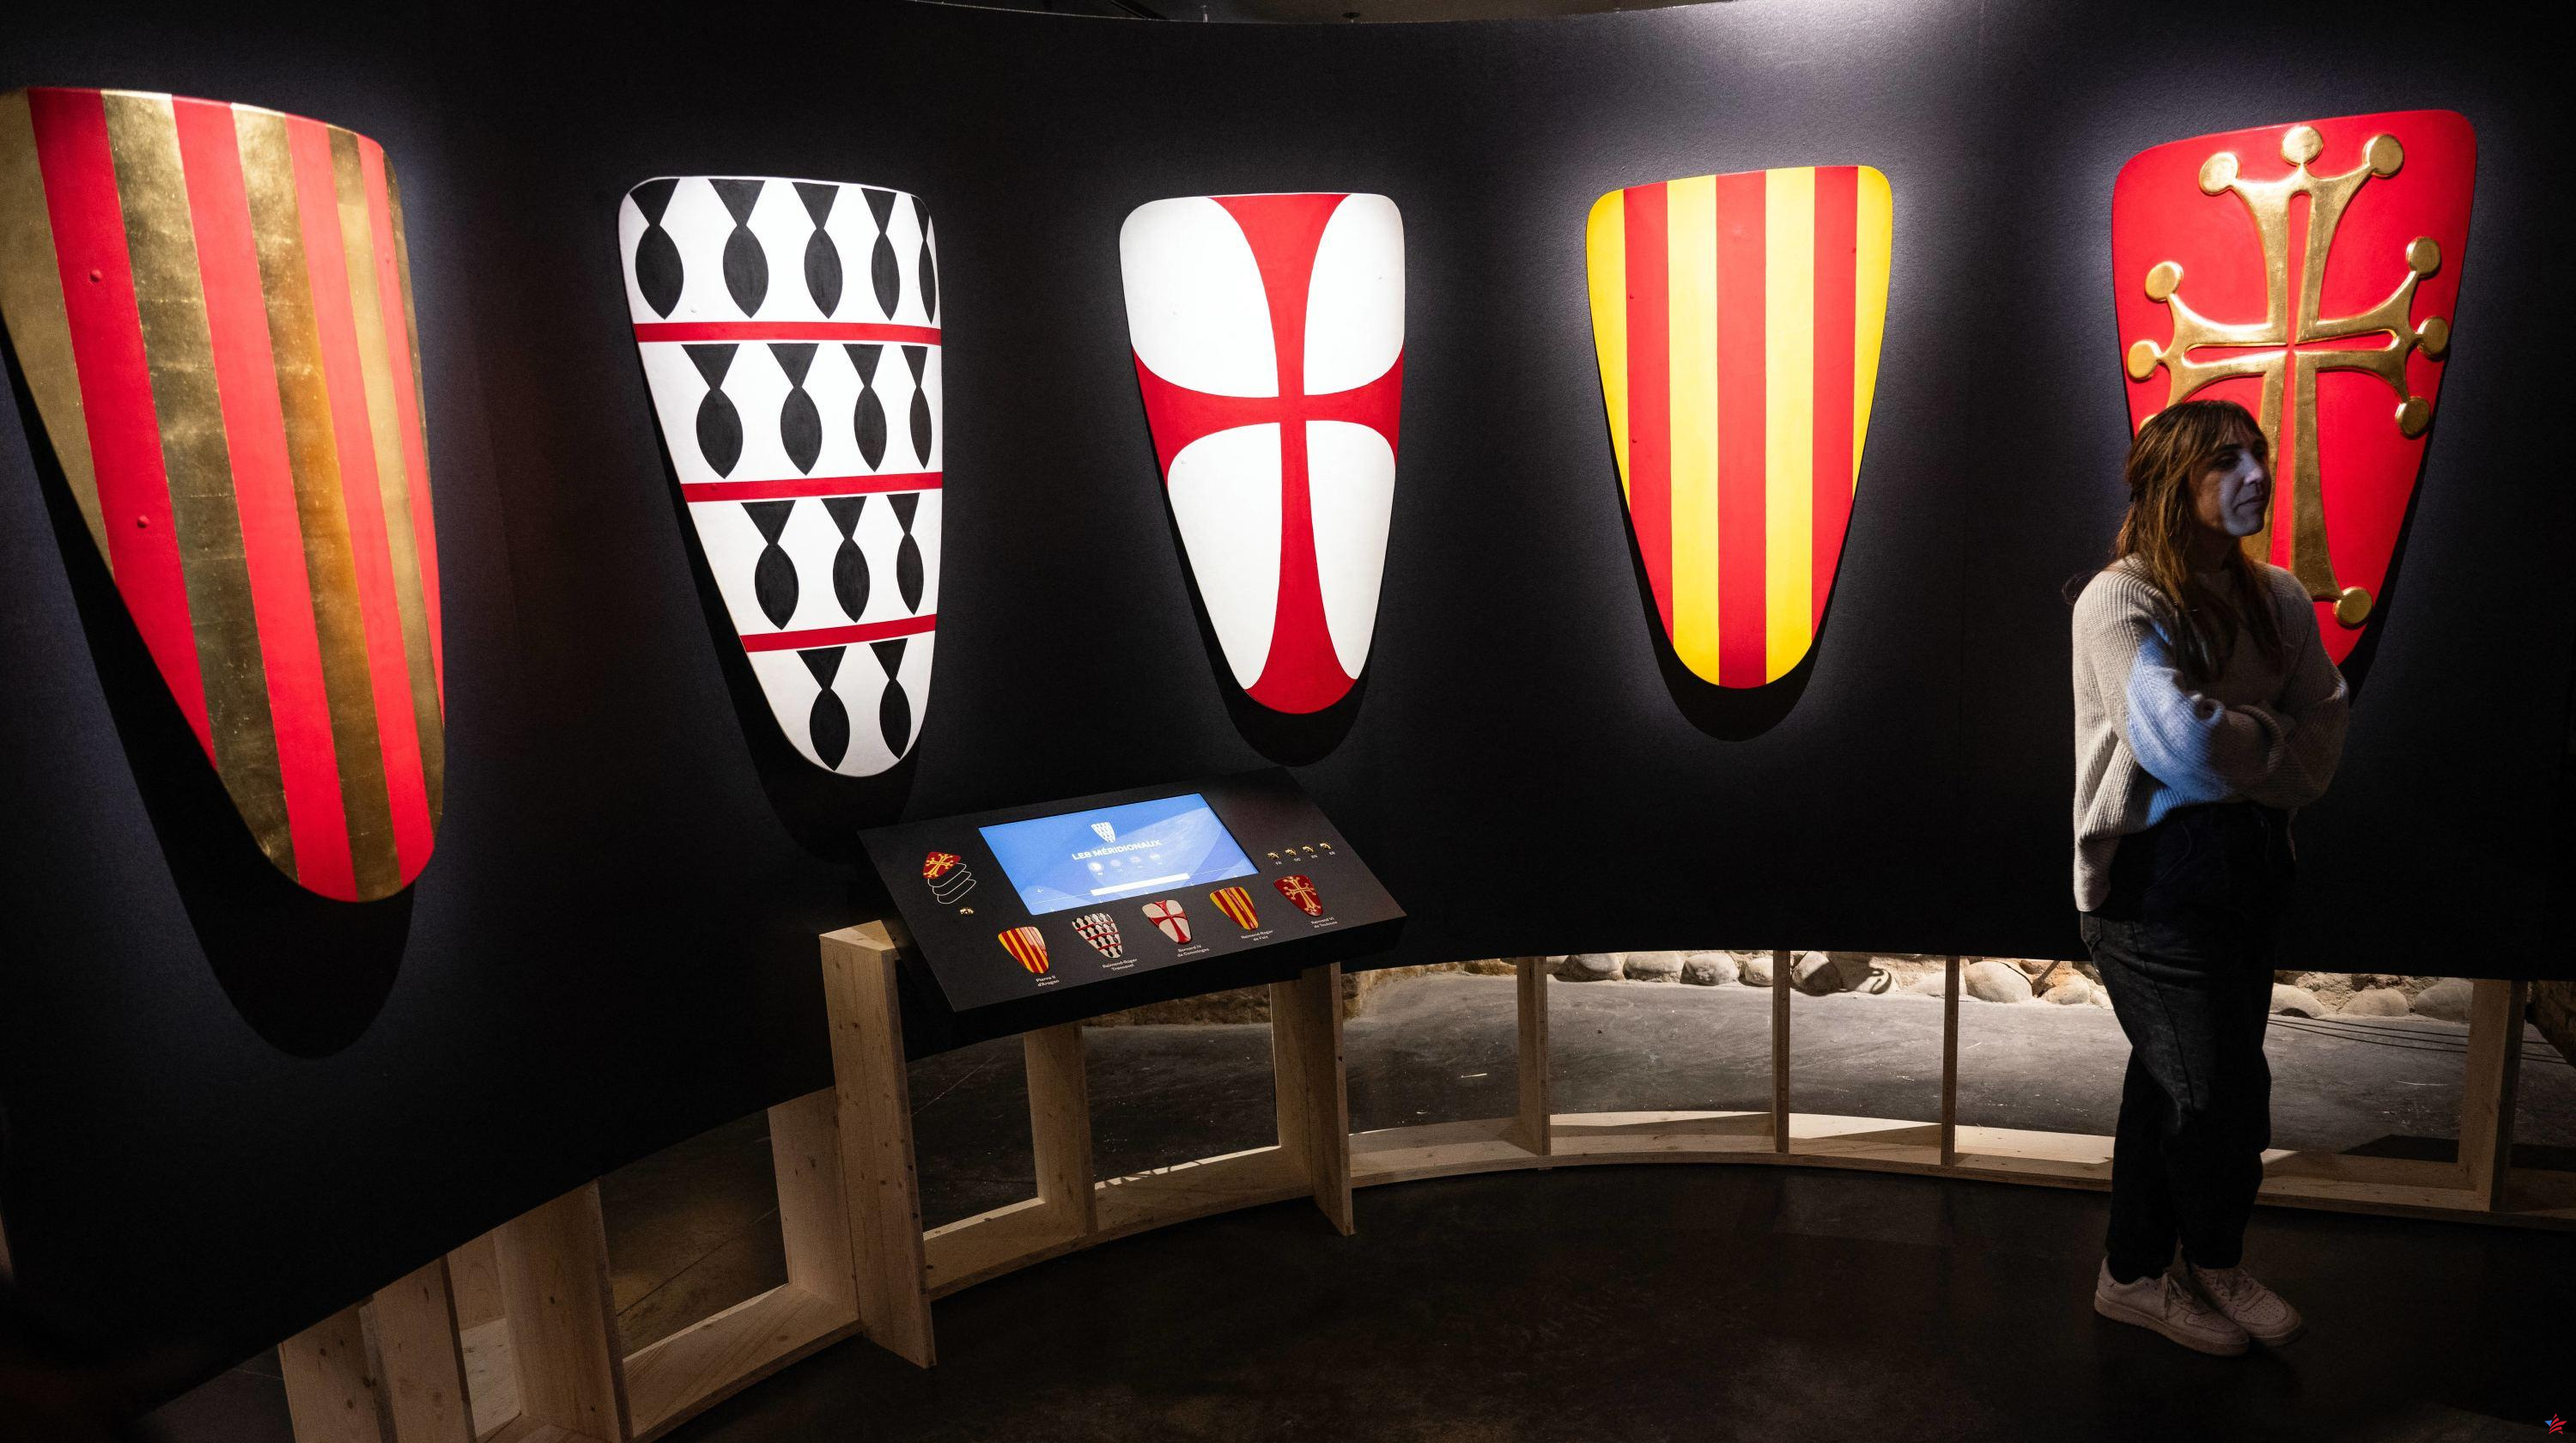 La compleja historia de los cátaros expuesta en Toulouse